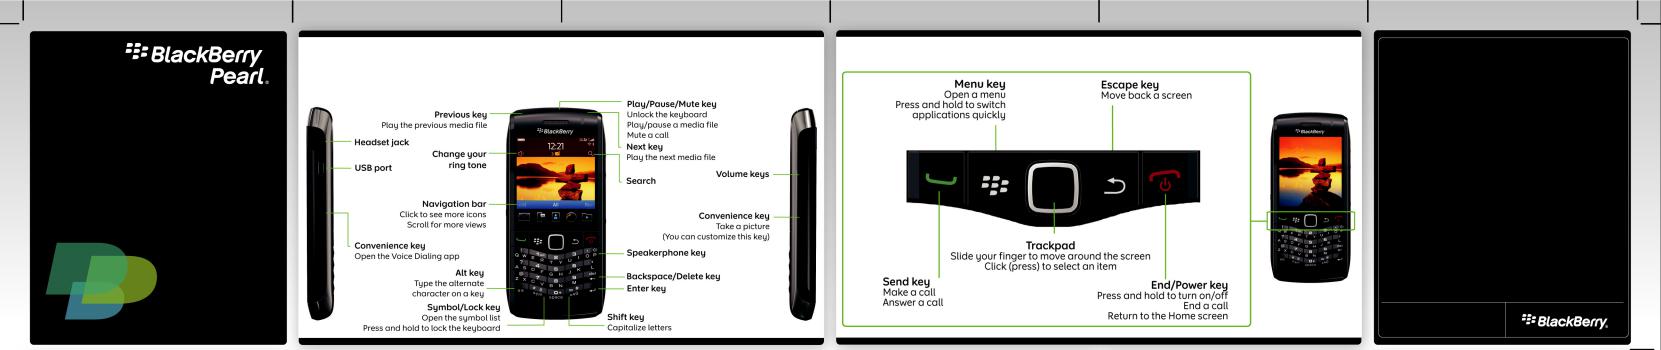 Blackberry Pearl 9100 Start Here Guide